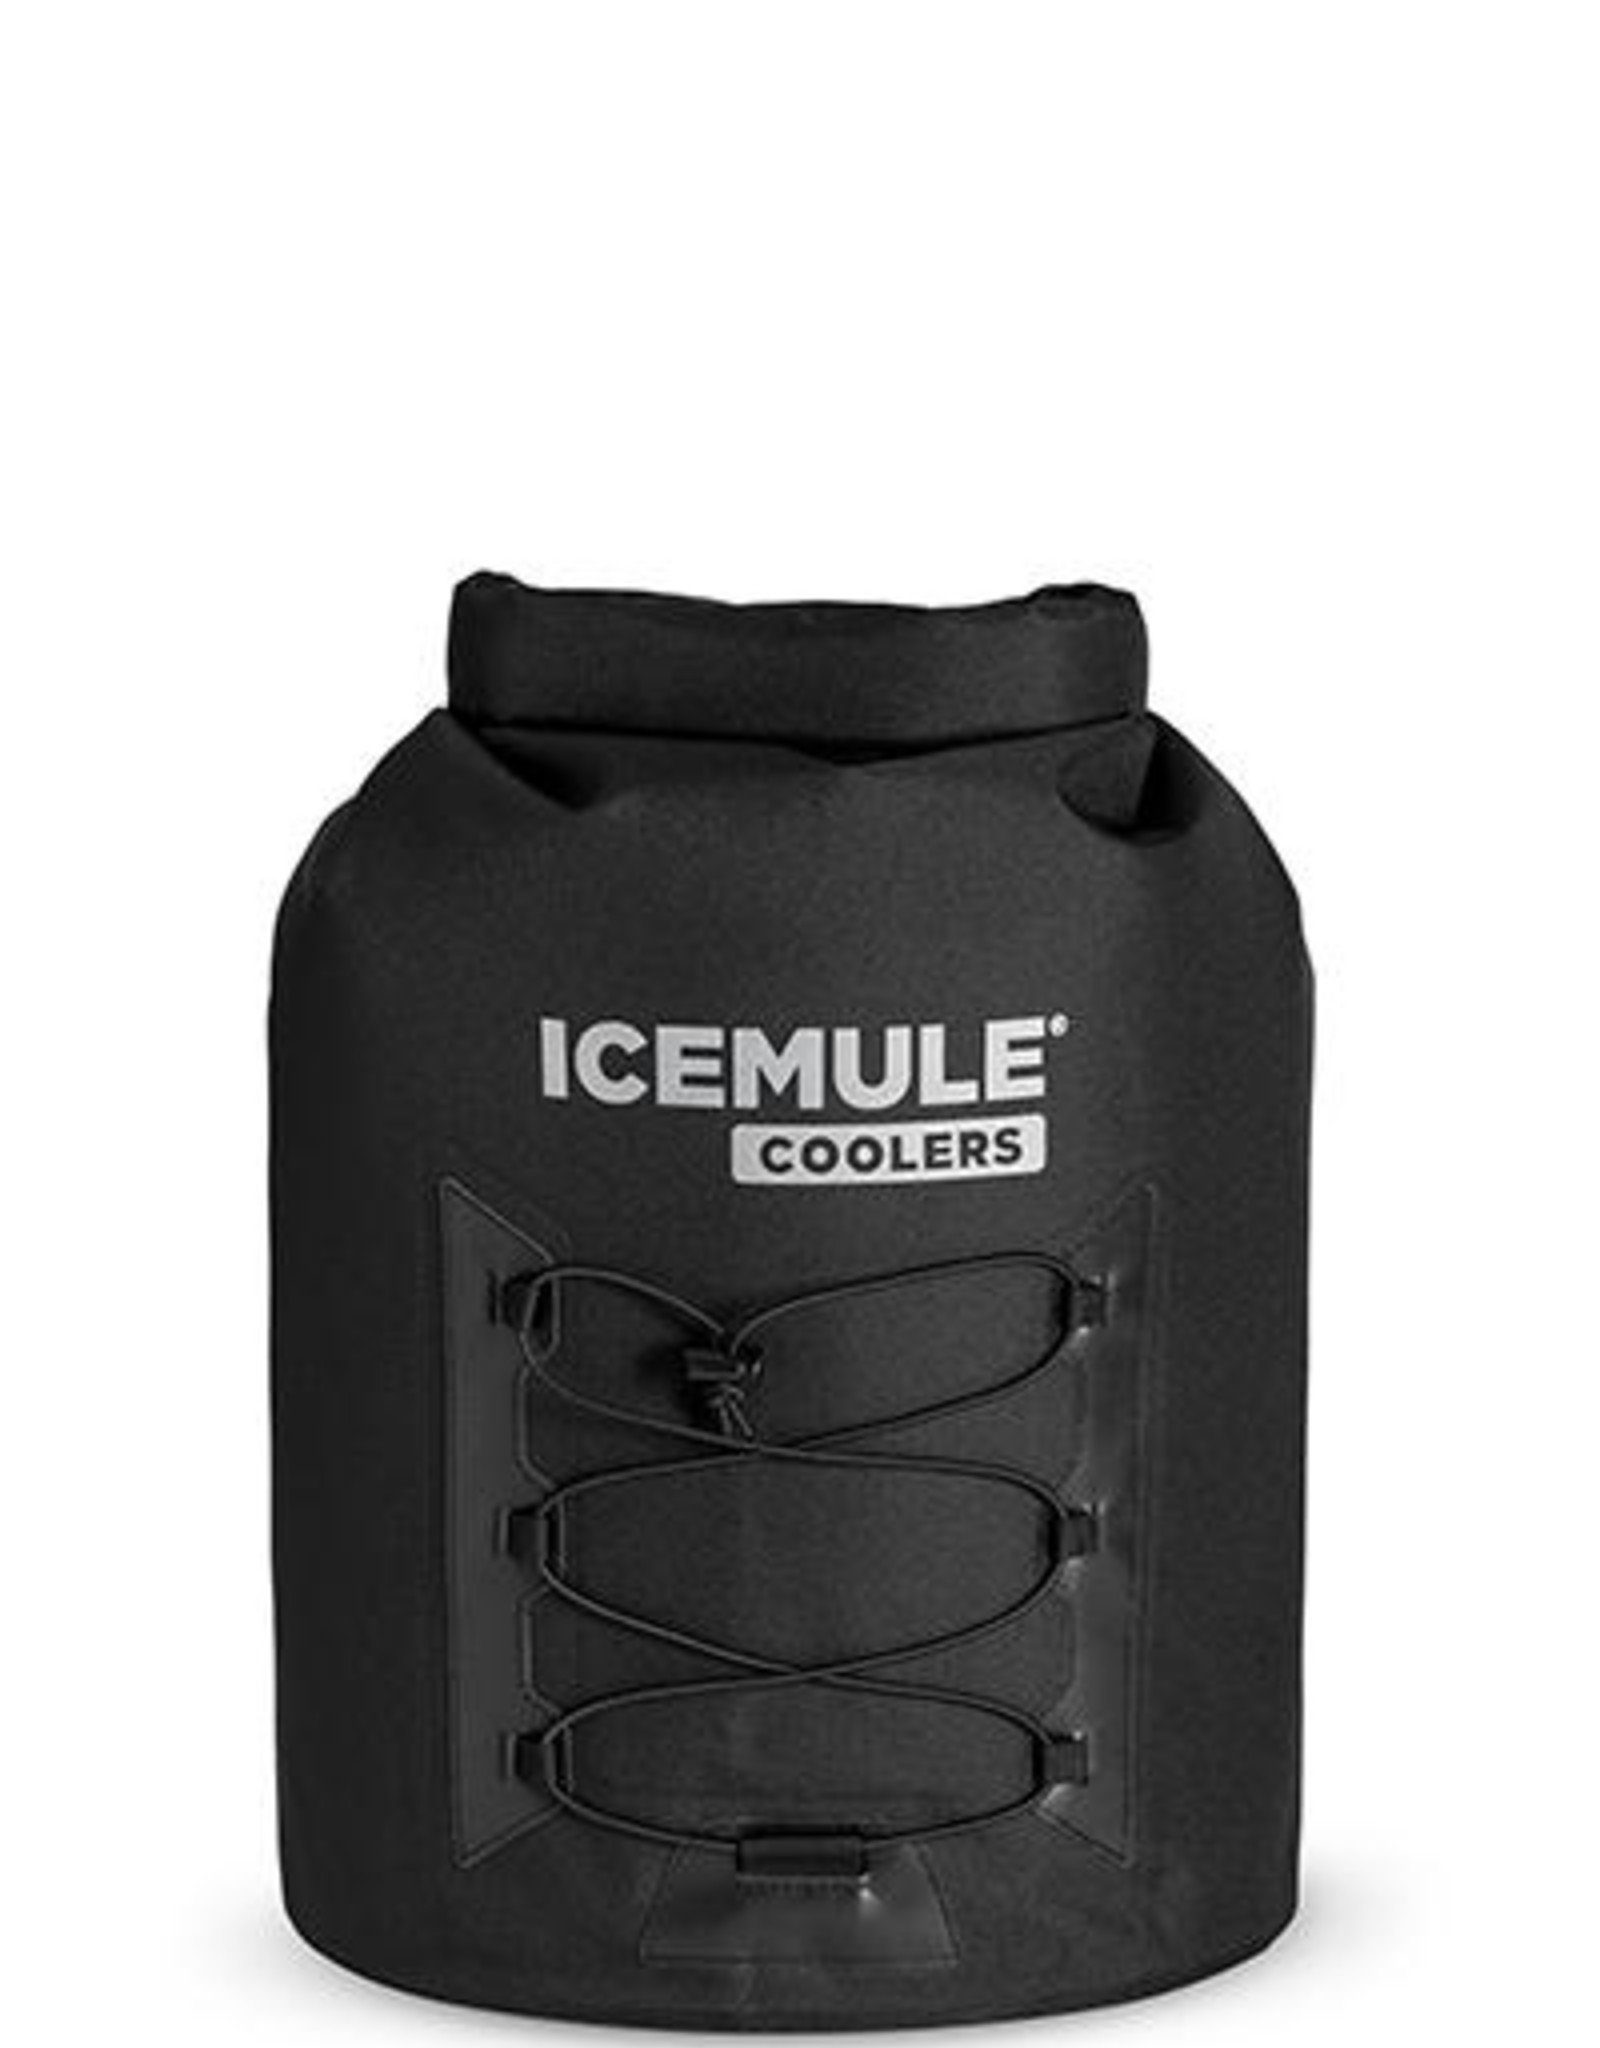 IceMule IceMule Pro Cooler